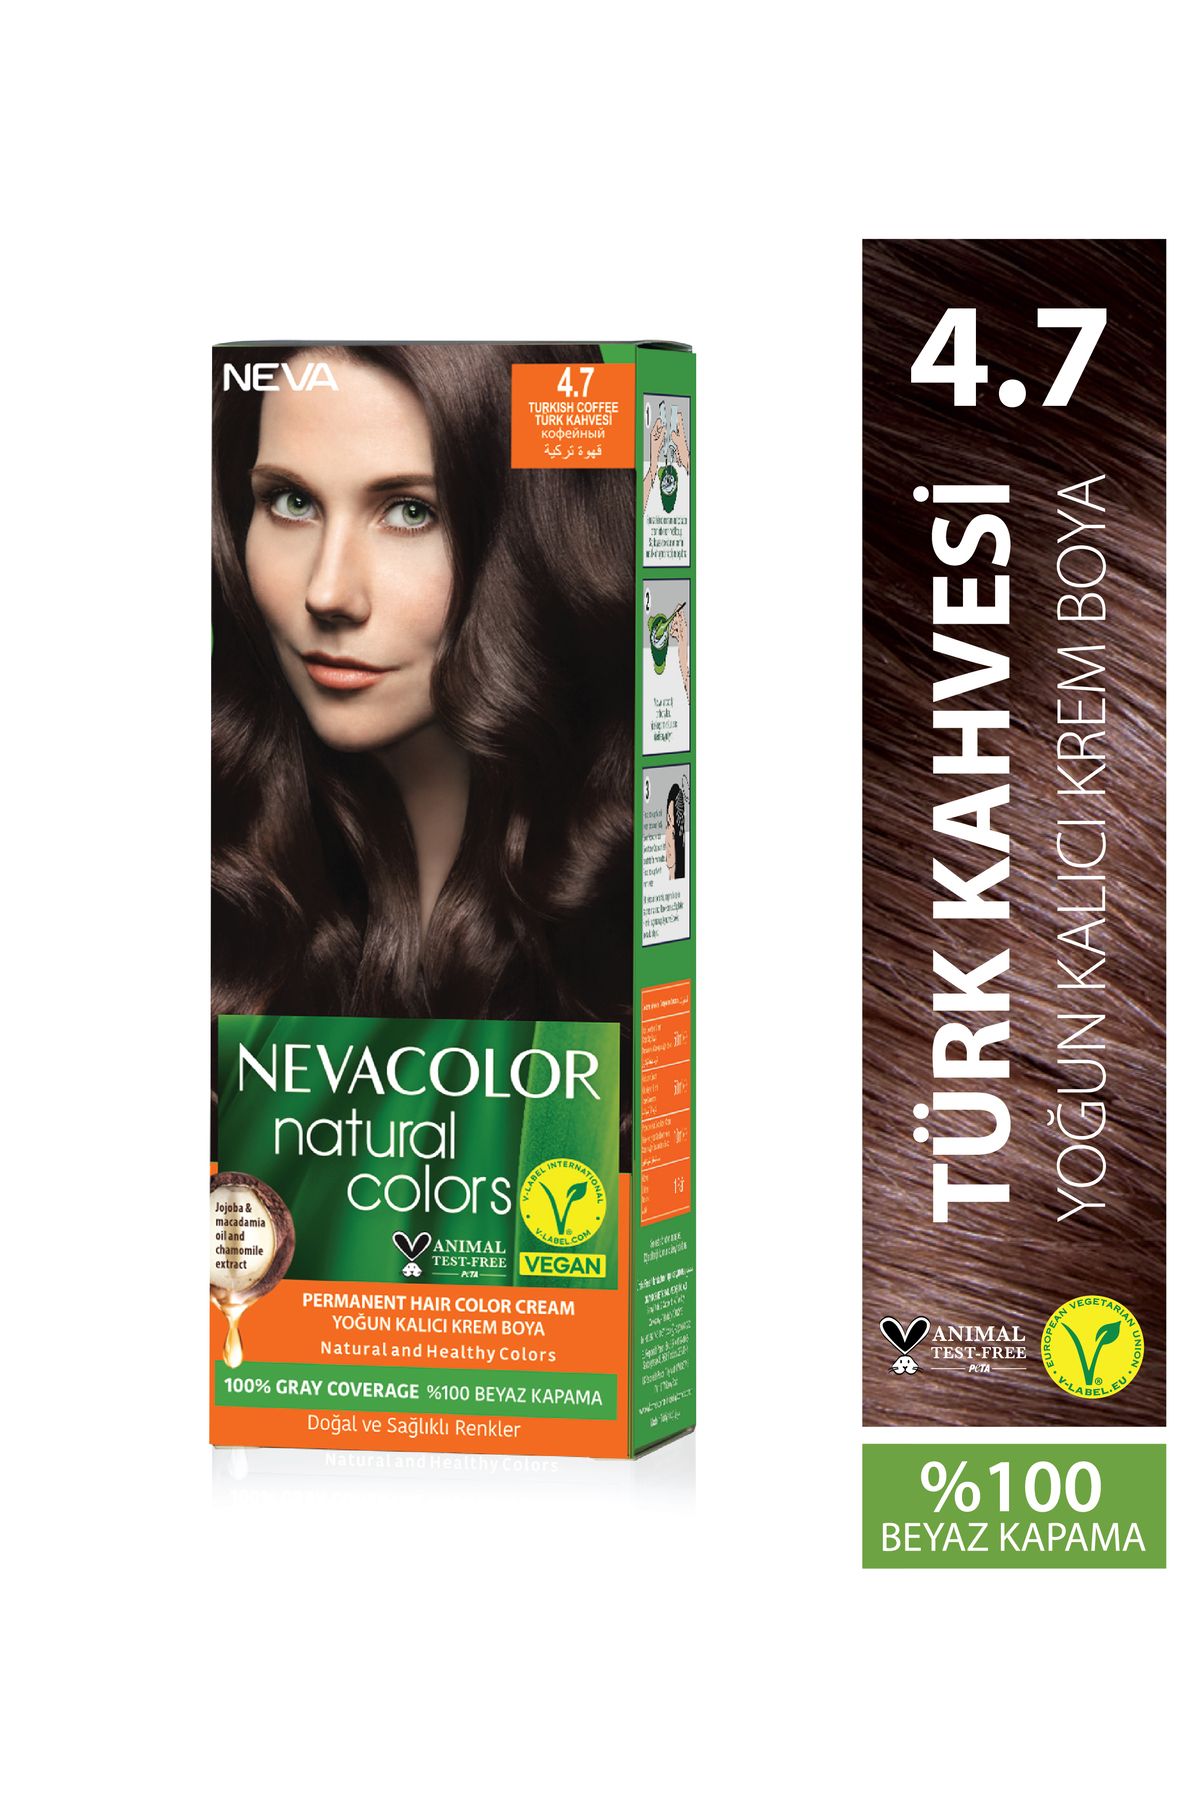 Neva Color Natural Colors 4.7 TÜRK KAHVESİ Kalıcı Krem Saç Boyası Seti